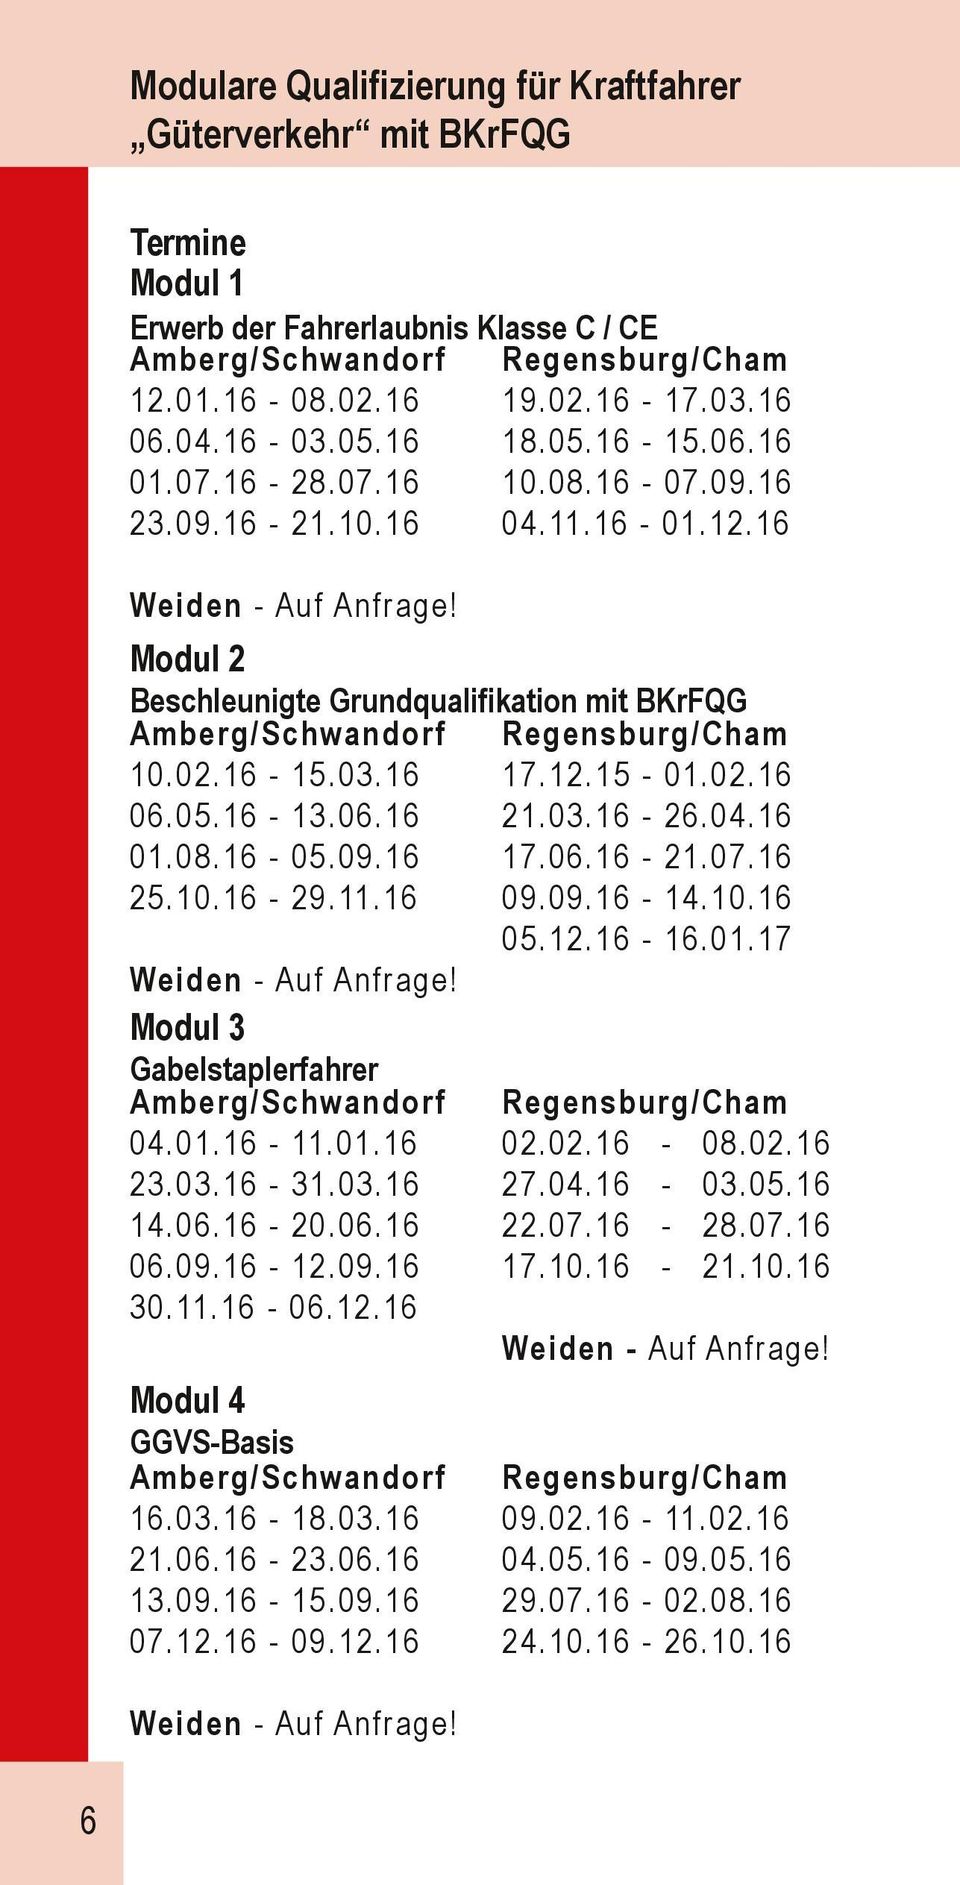 Modul 2 Beschleunigte Grundqualifikation mit BKrFQG Amberg/Schwandorf Regensburg/Cham 10.02.16-15.03.16 17.12.15-01.02.16 06.05.16-13.06.16 21.03.16-26.04.16 01.08.16-05.09.16 17.06.16-21.07.16 25.10.16-29.